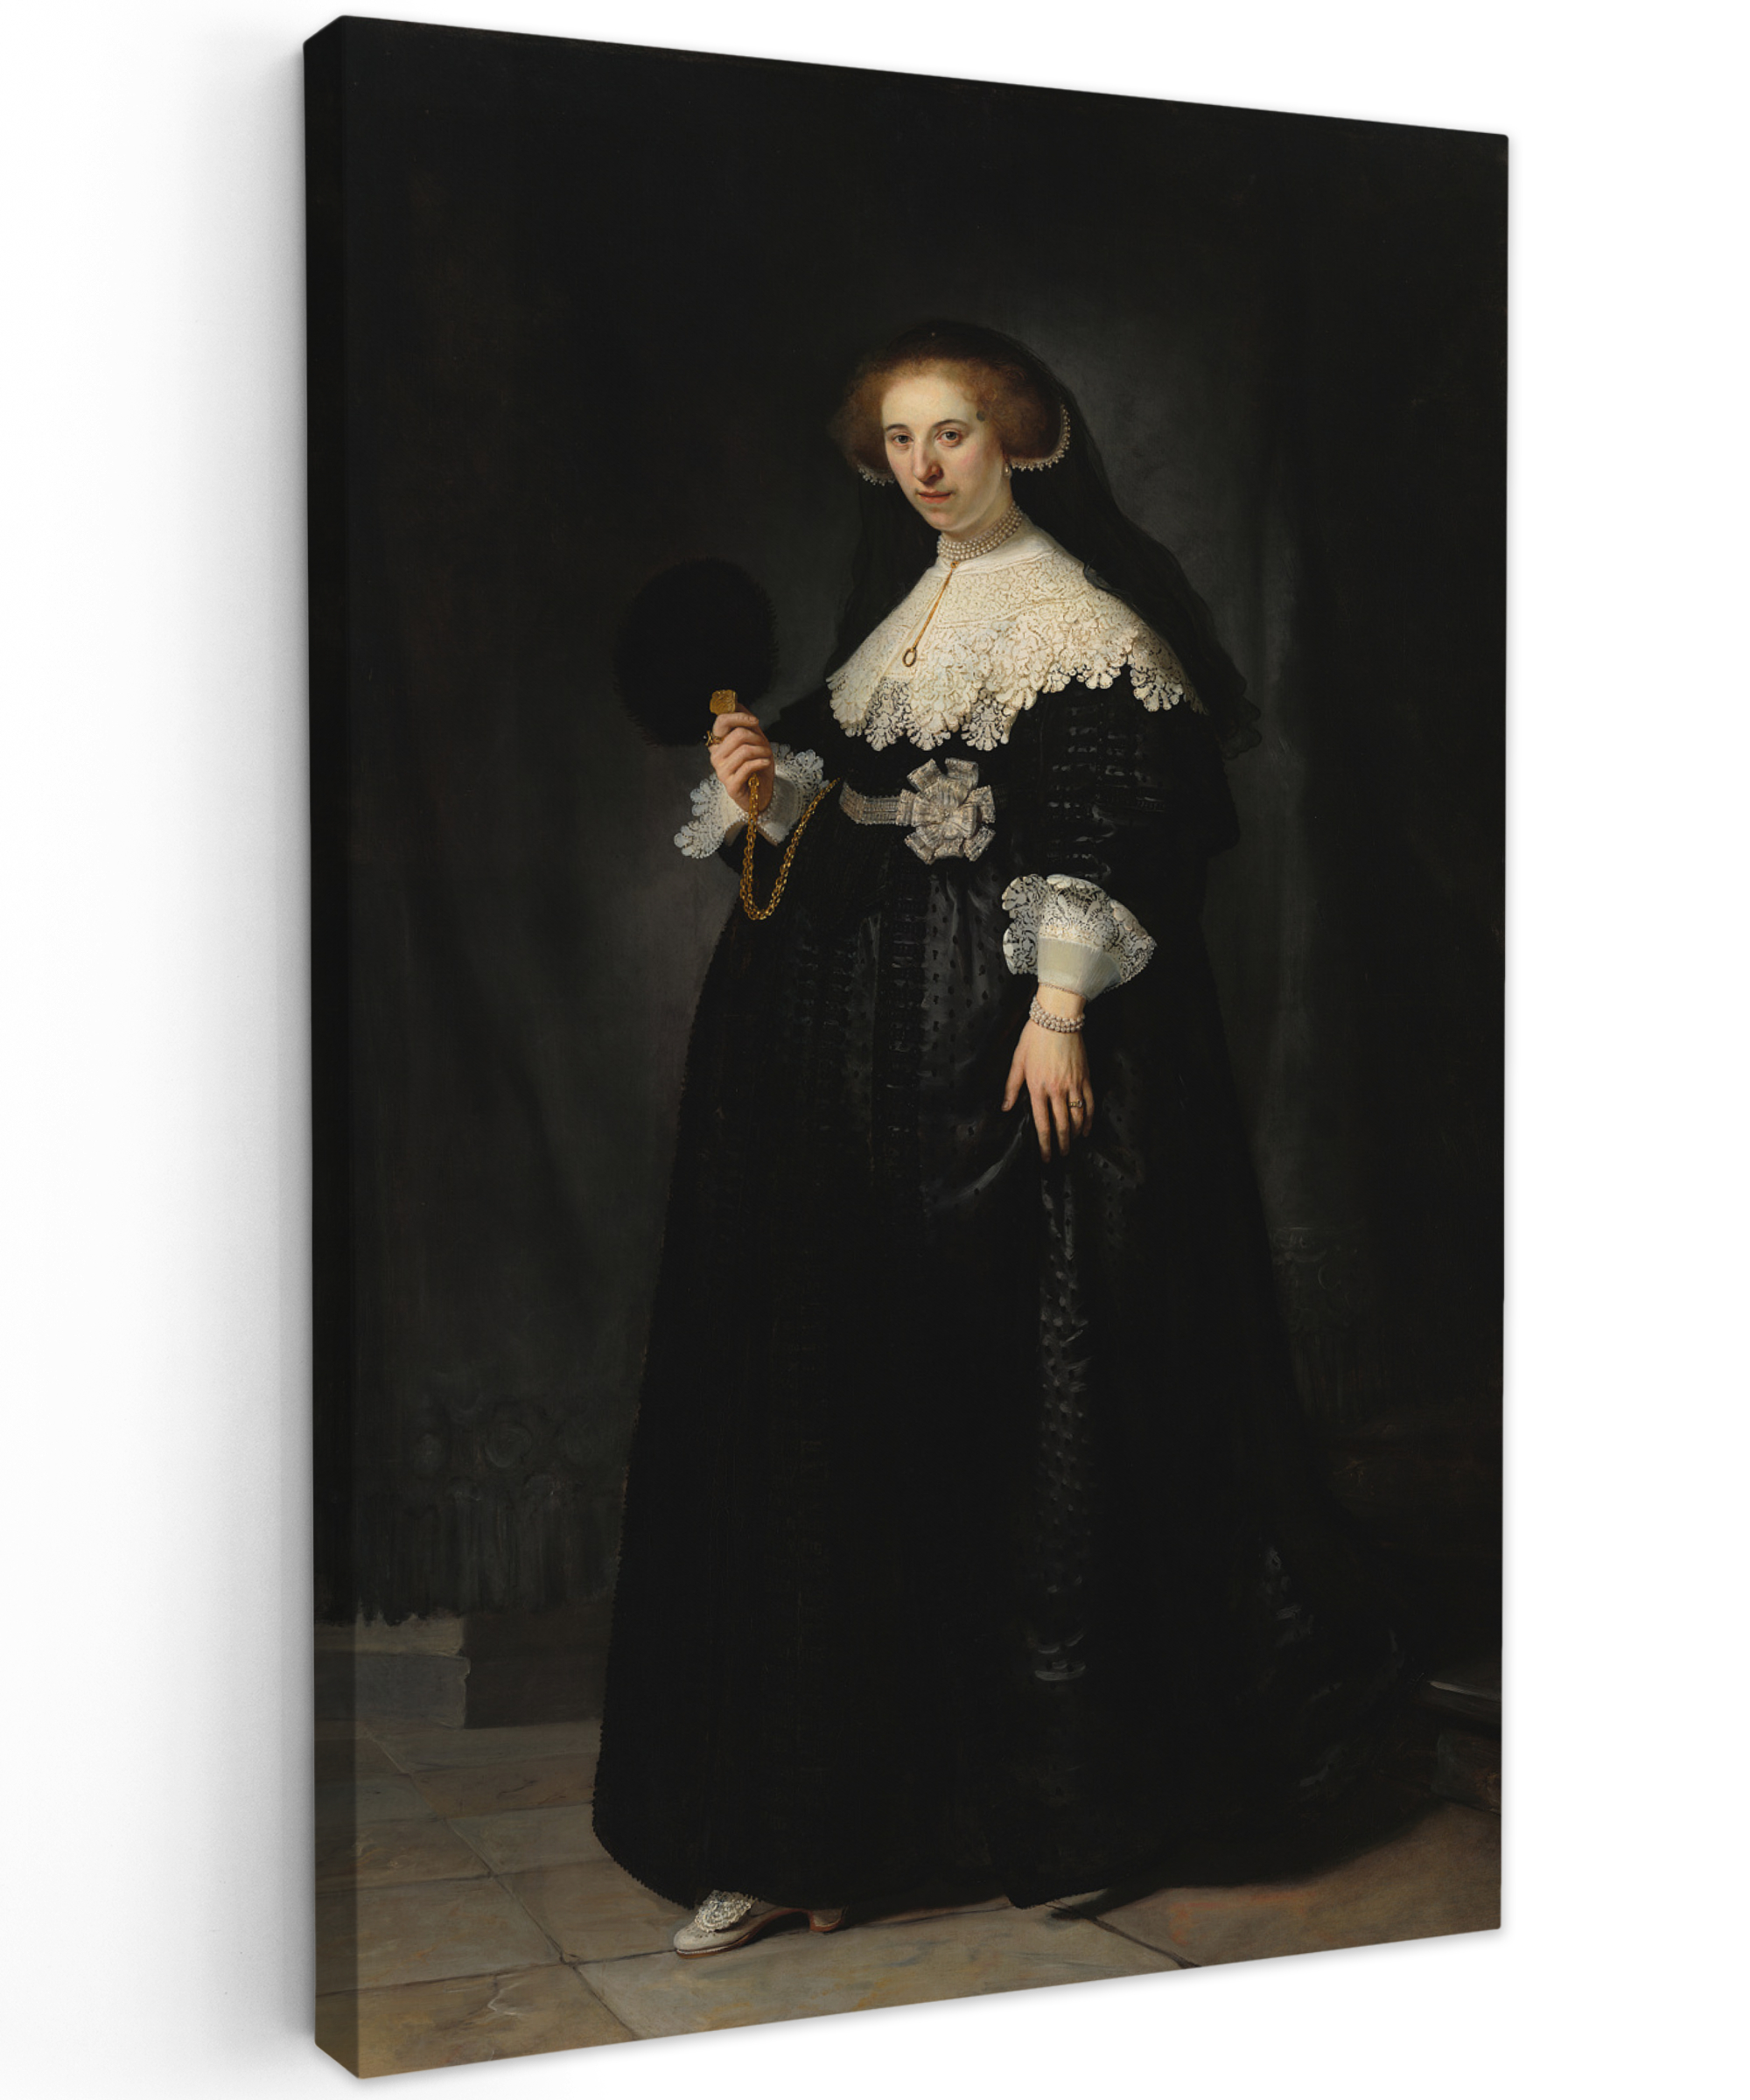 Leinwandbild - Das Hochzeitsbildnis von Oopjen Coppit - Rembrandt van Rijn